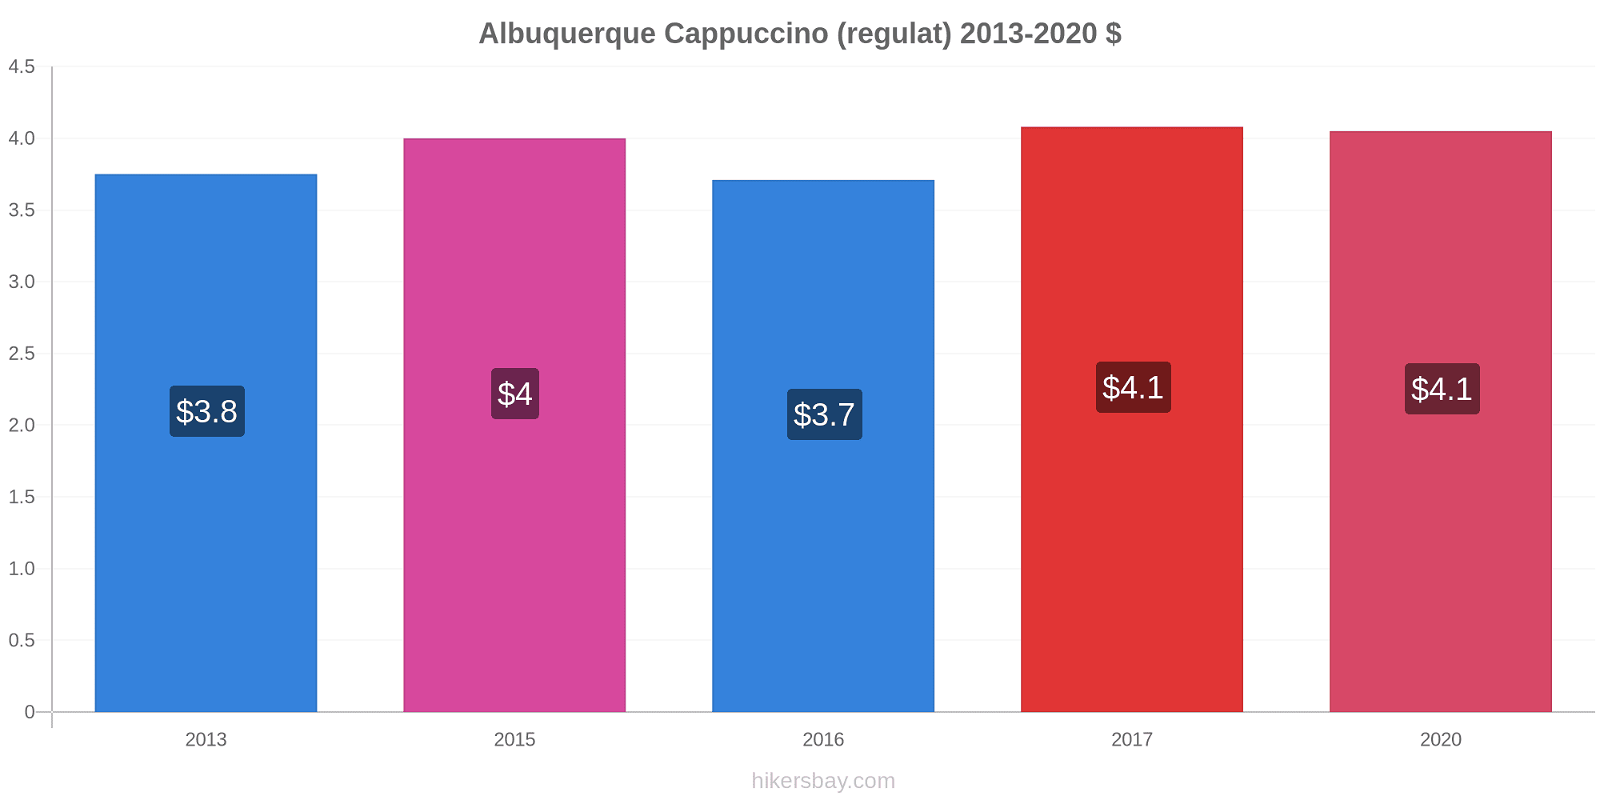 Albuquerque modificări de preț Cappuccino (regulat) hikersbay.com